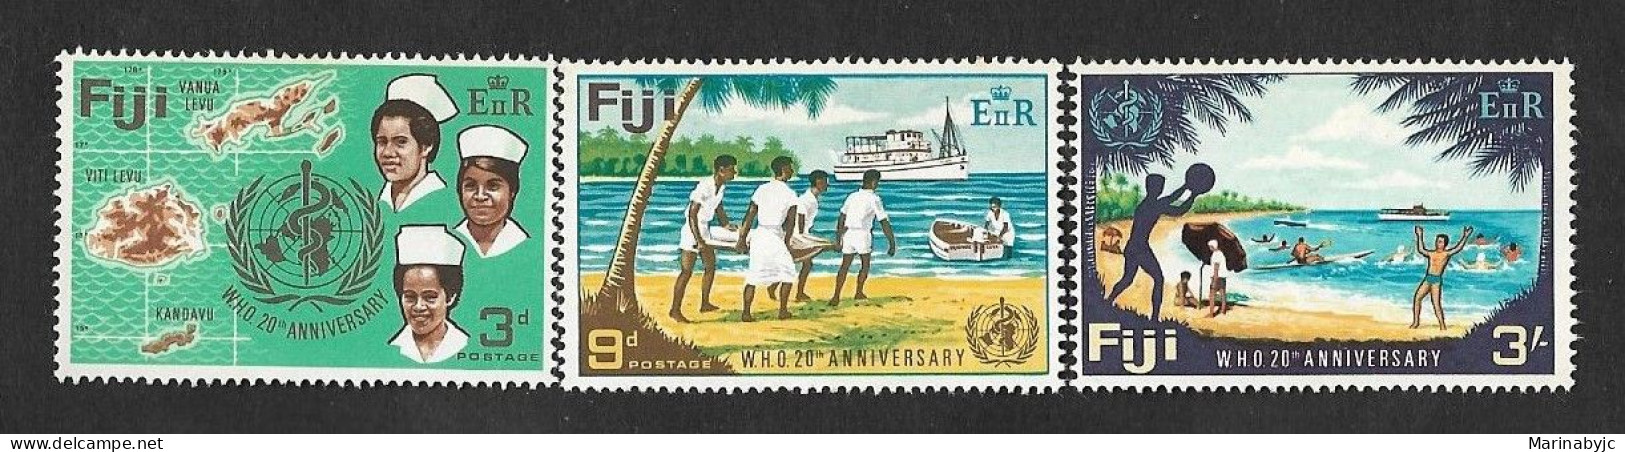 SD)FIJI UN 20TH ANNIVERSARY, SERIES OF 3 MINT STAMPS - Fiji (1970-...)